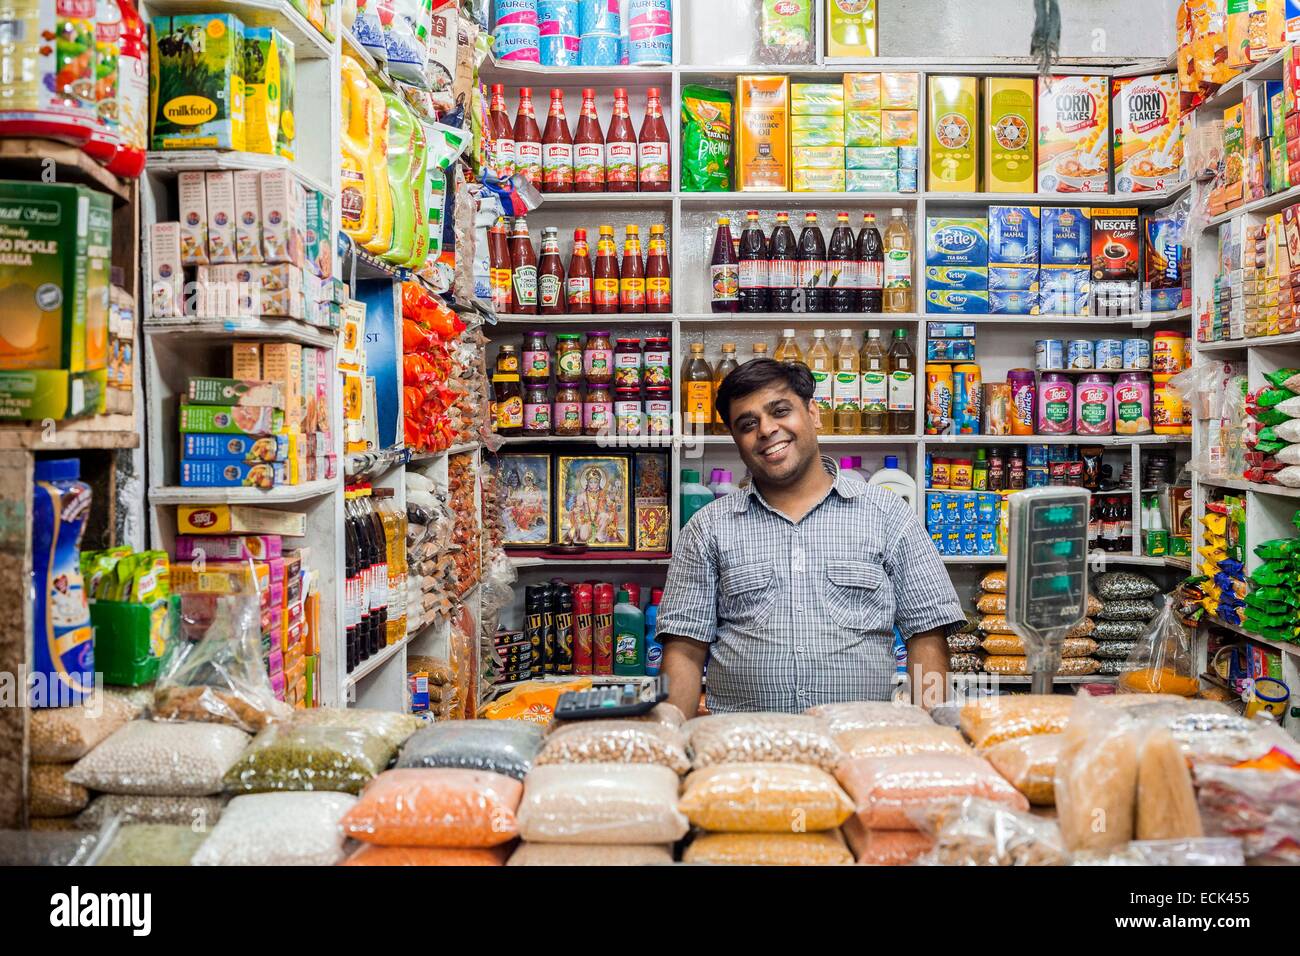 India, New Delhi, INA Market (Indian National Army Market), food market Stock Photo